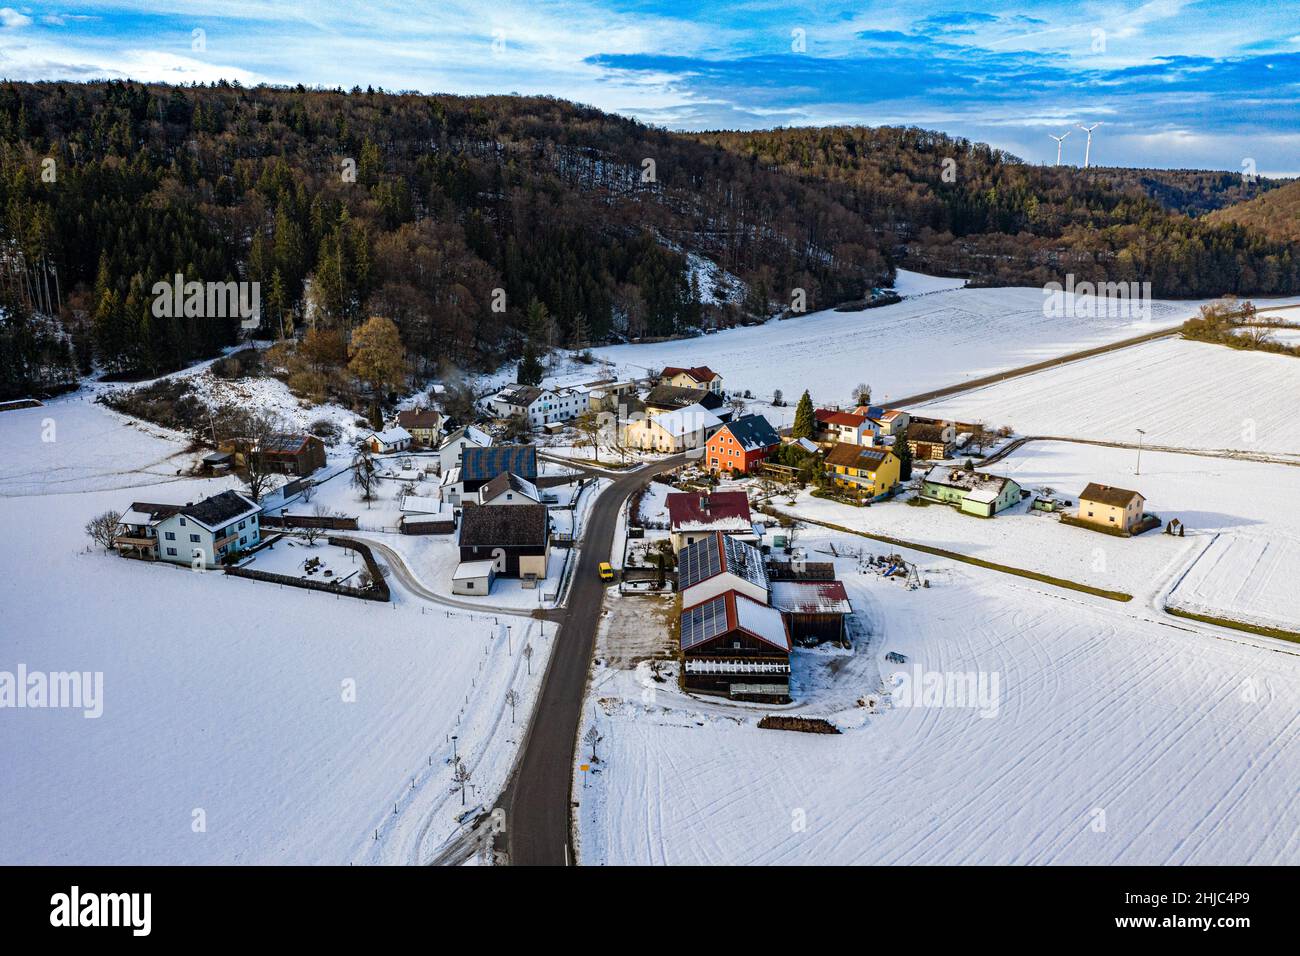 vista aérea de un pequeño pueblo en el parque natural de altmühltal, baviera, alemania Foto de stock